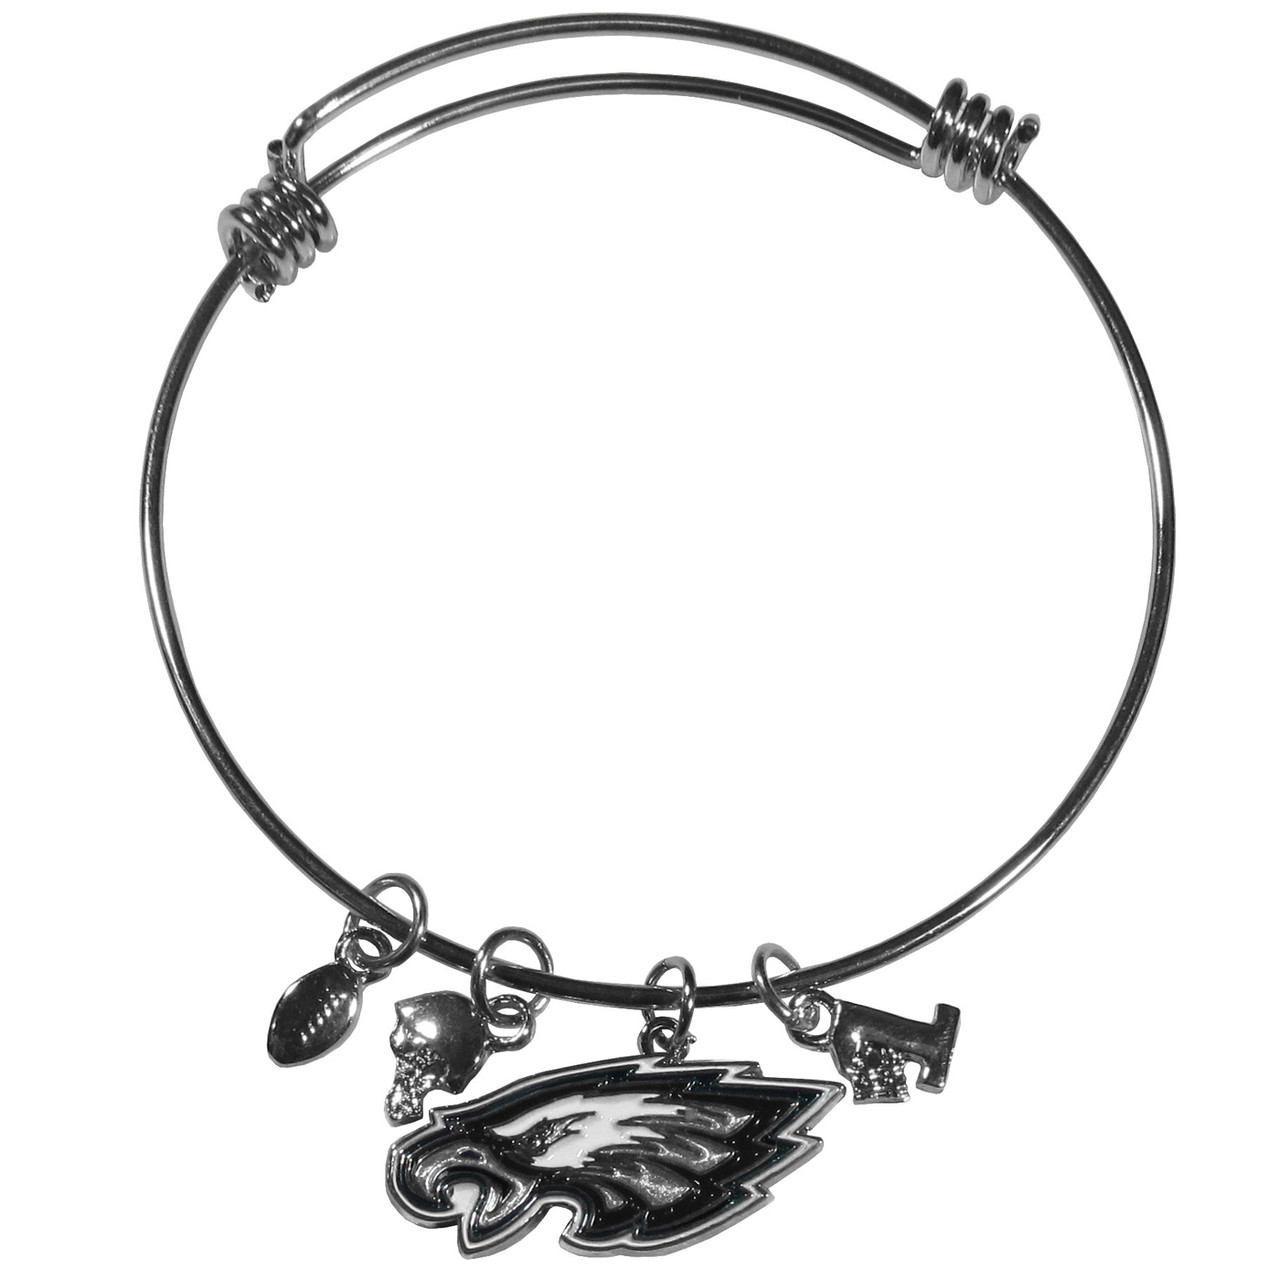 philadelphia eagles bracelet